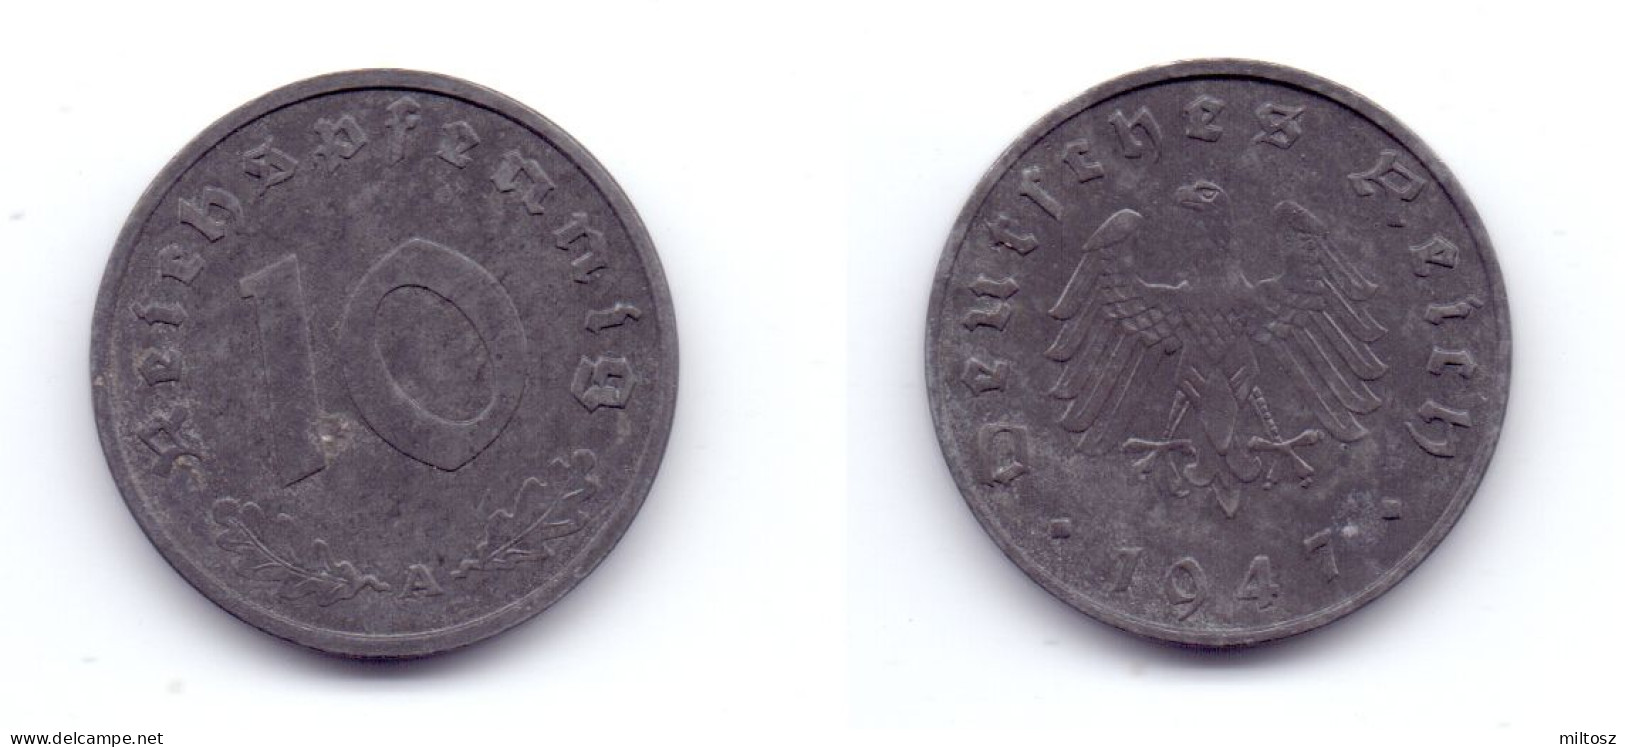 Germany 10 Reichspfennig 1947 A Allied Occupation - 10 Reichspfennig